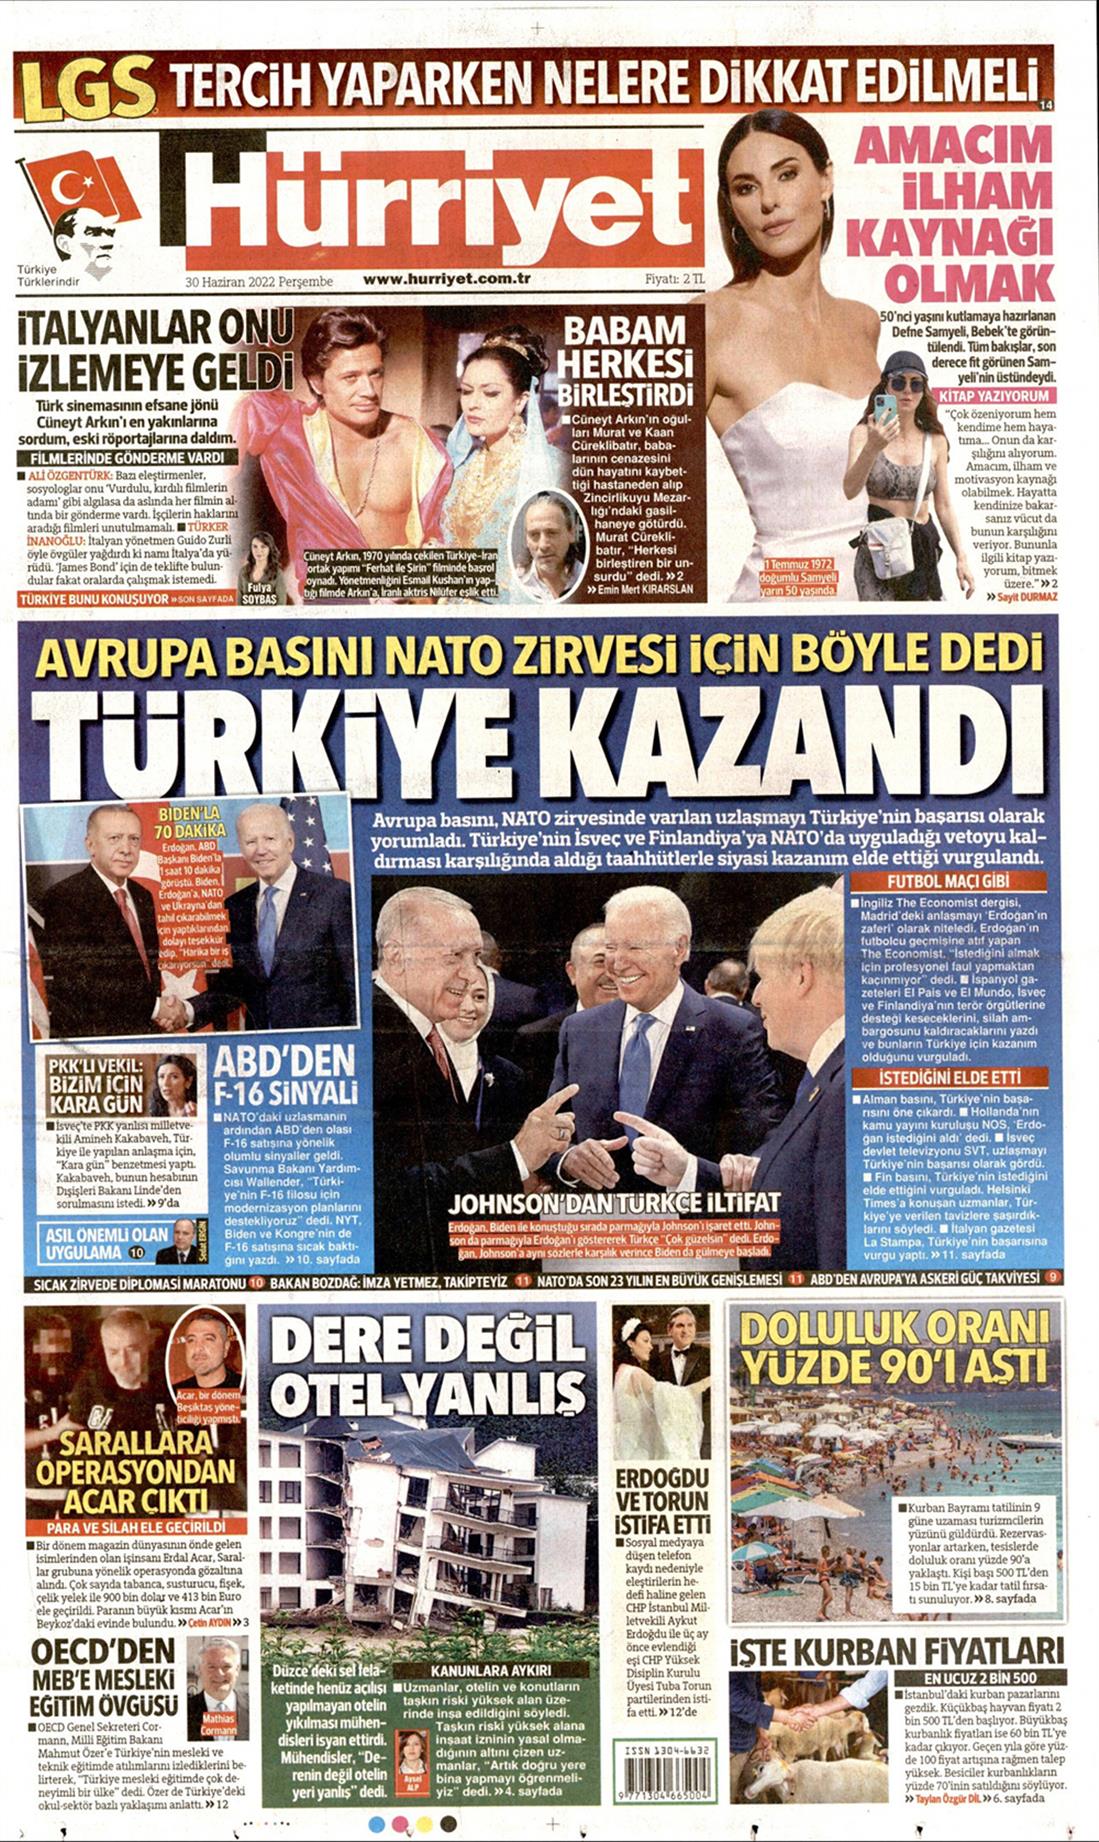 Τουρκικός Τύπος - σύνοδος ΝΑΤΟ - hurriyet